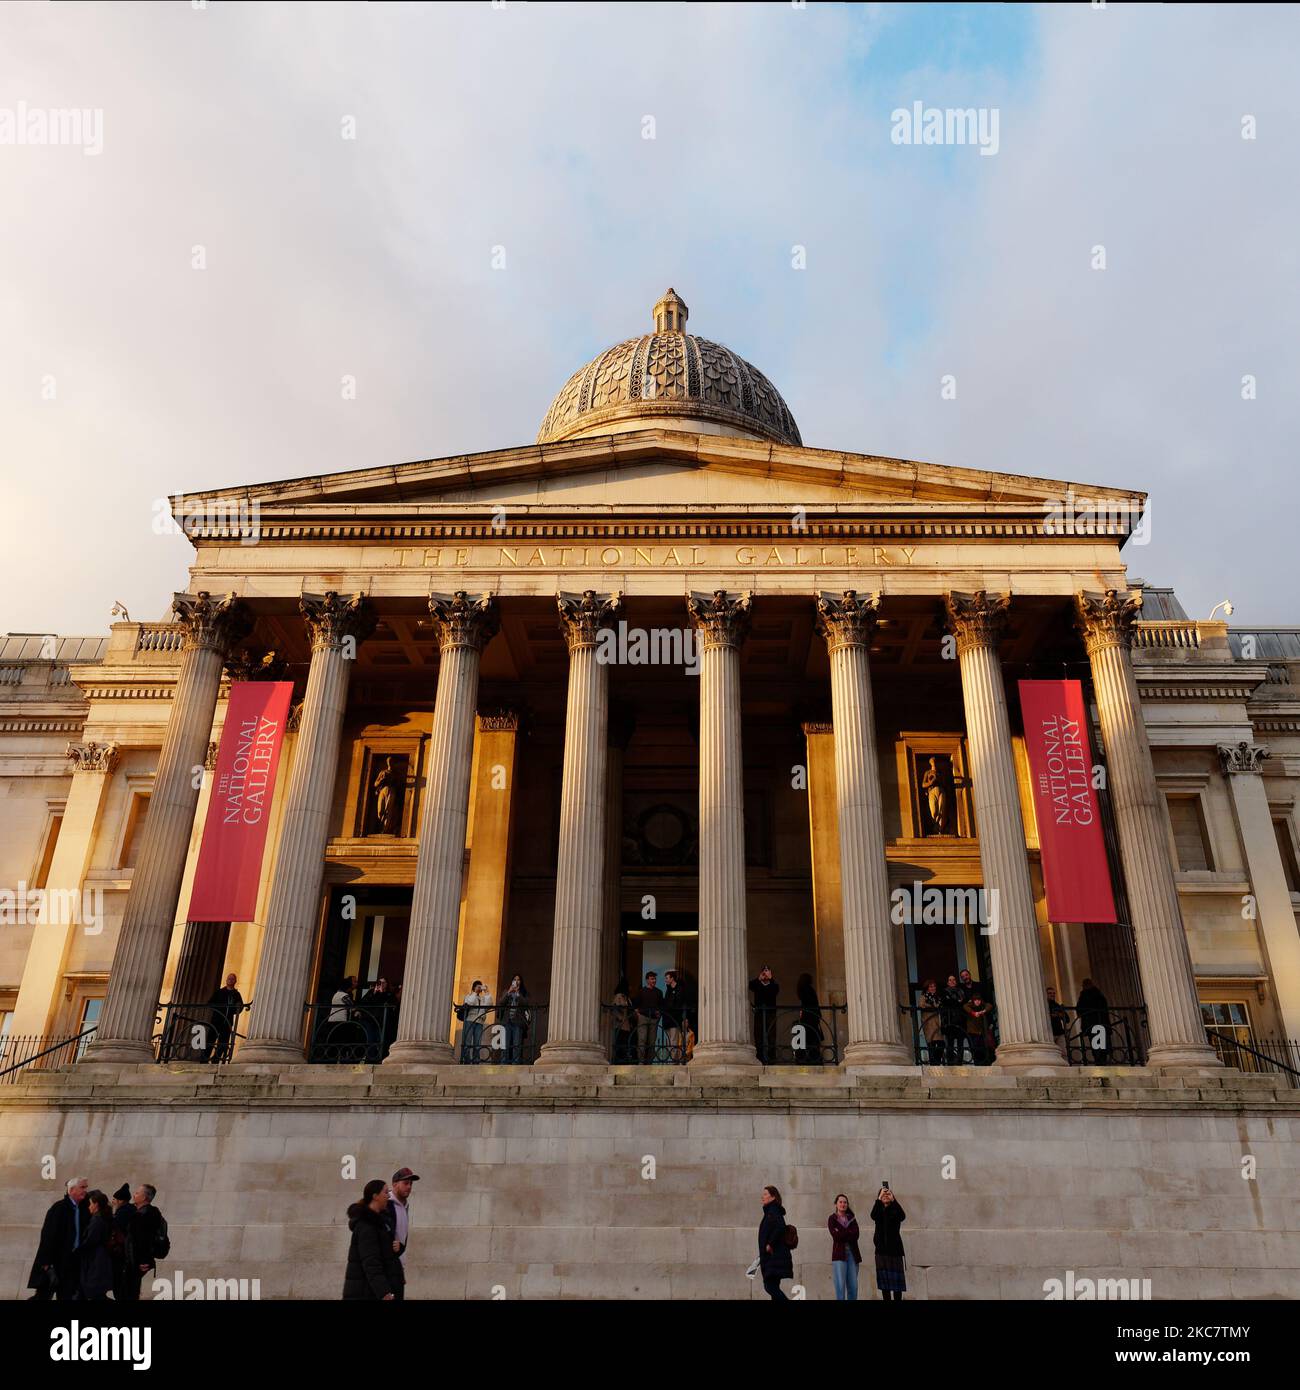 Façade de la National Gallery avec plate-forme d'observation entourée de colonnes, Londres, Angleterre Banque D'Images